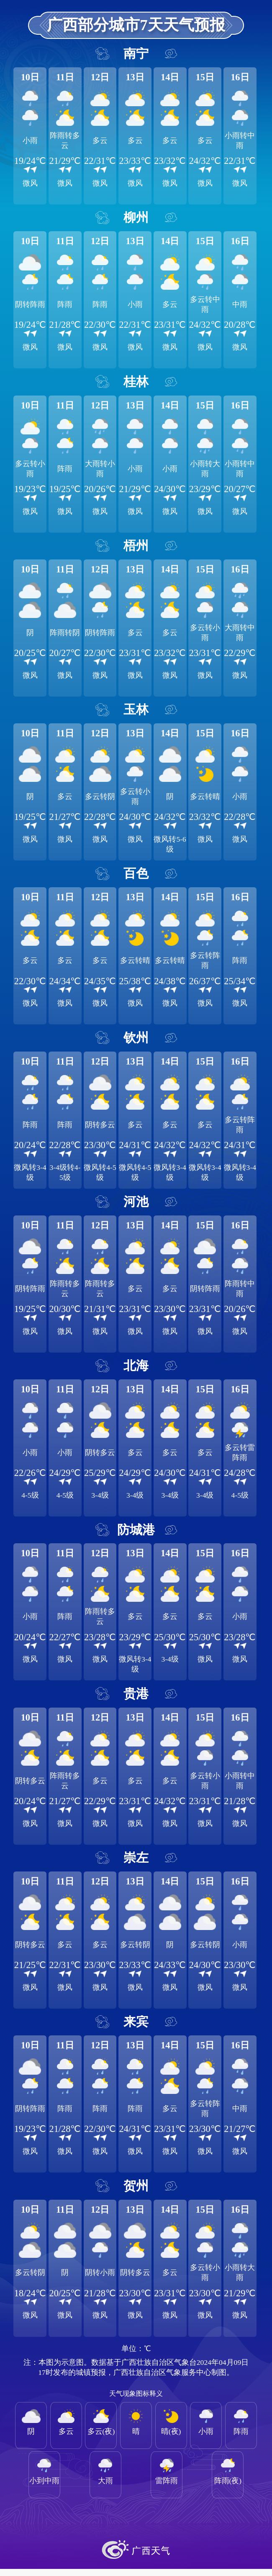 柳州气温直冲30℃,强对流天气也来袭!正在倒计时